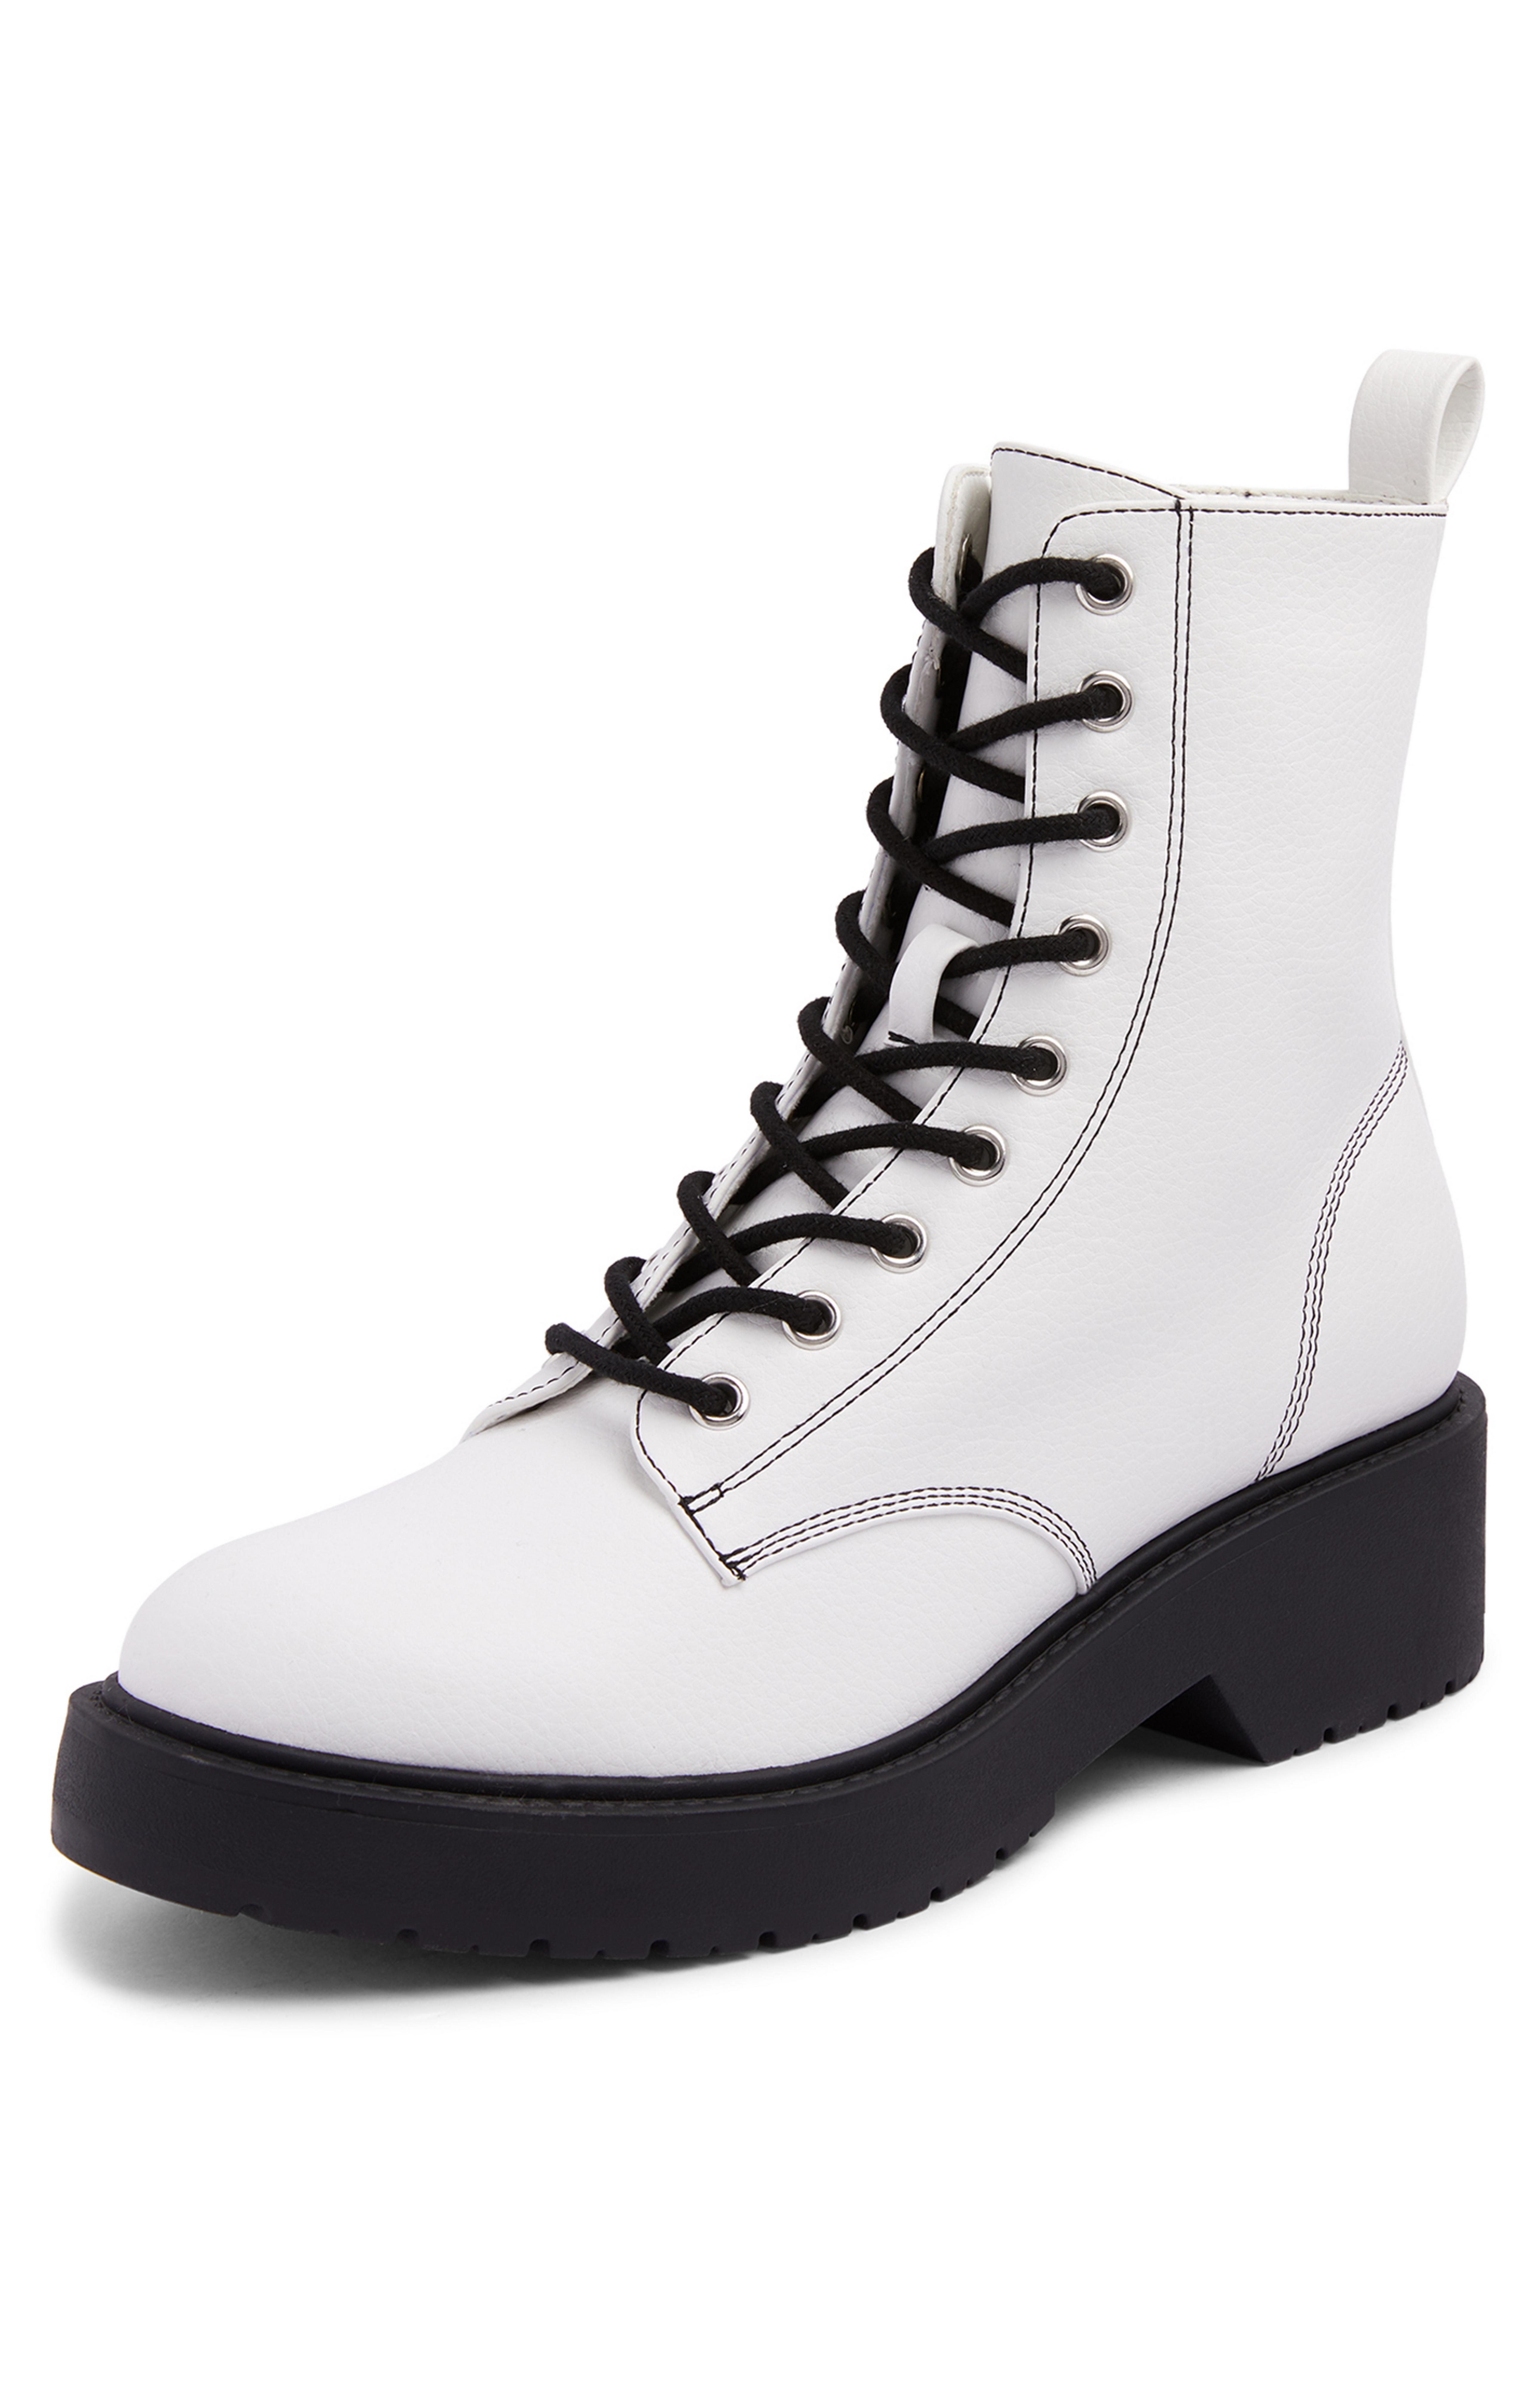 Botines blancos con cordones en contraste y suela gruesa | Botas para mujer | Zapatos y botas para | línea de moda femenina | Todos los productos Primark | España